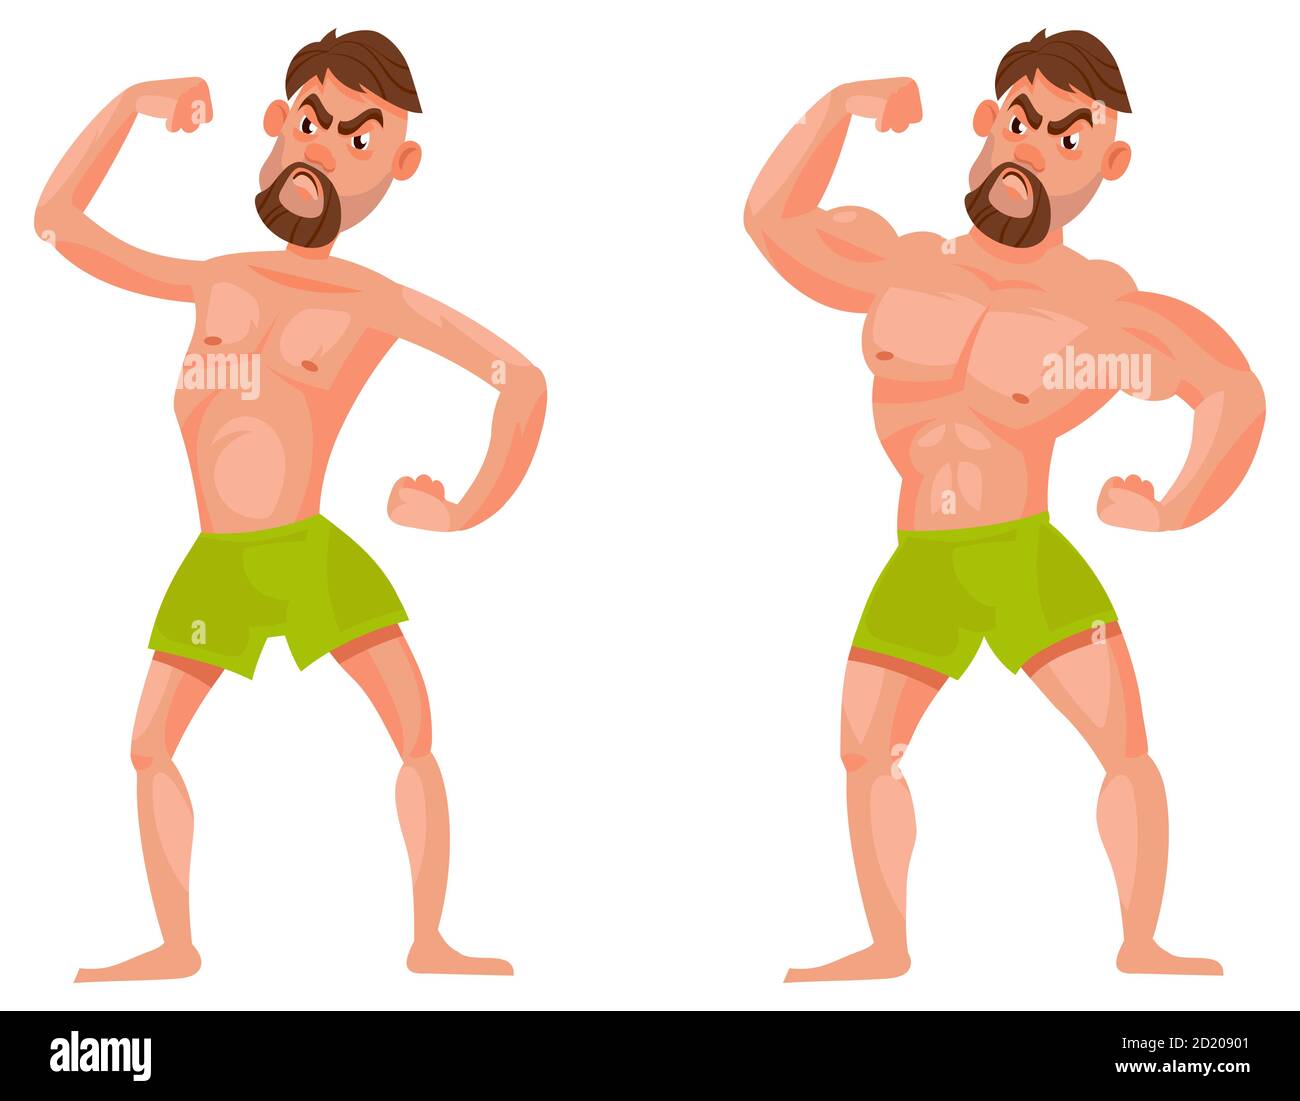 Homme avant et après aller à la salle de gym. Personnage masculin montrant des muscles. Illustration de Vecteur